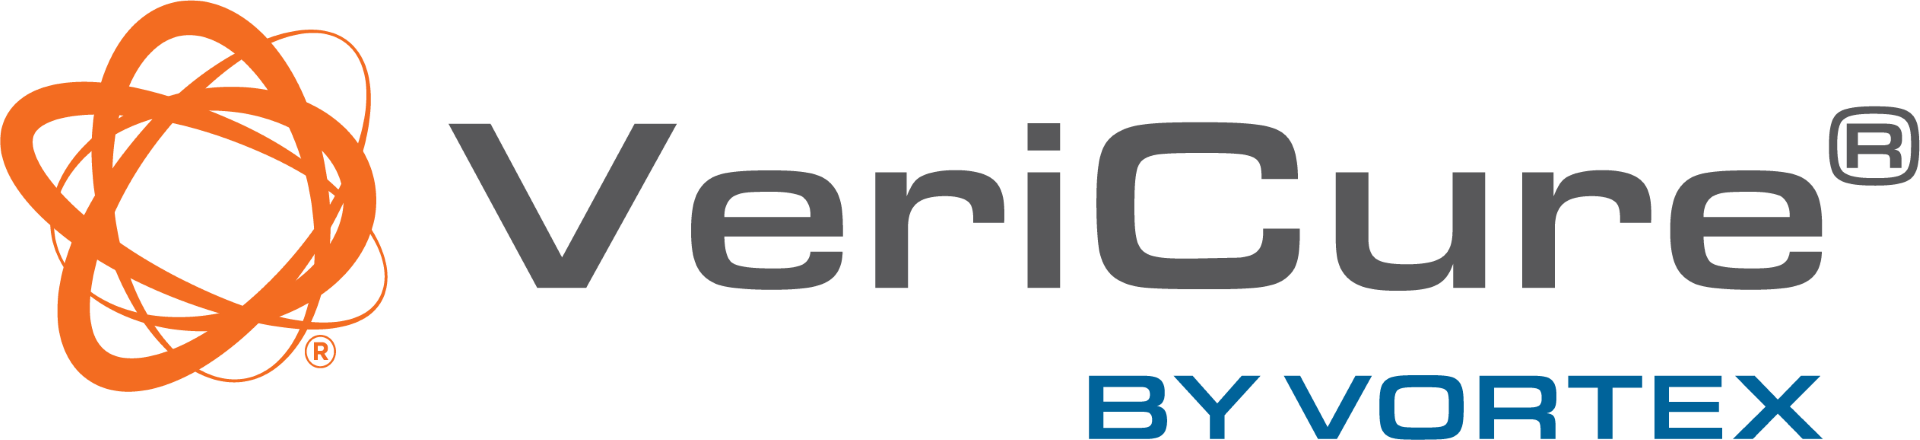 Vericure_logo